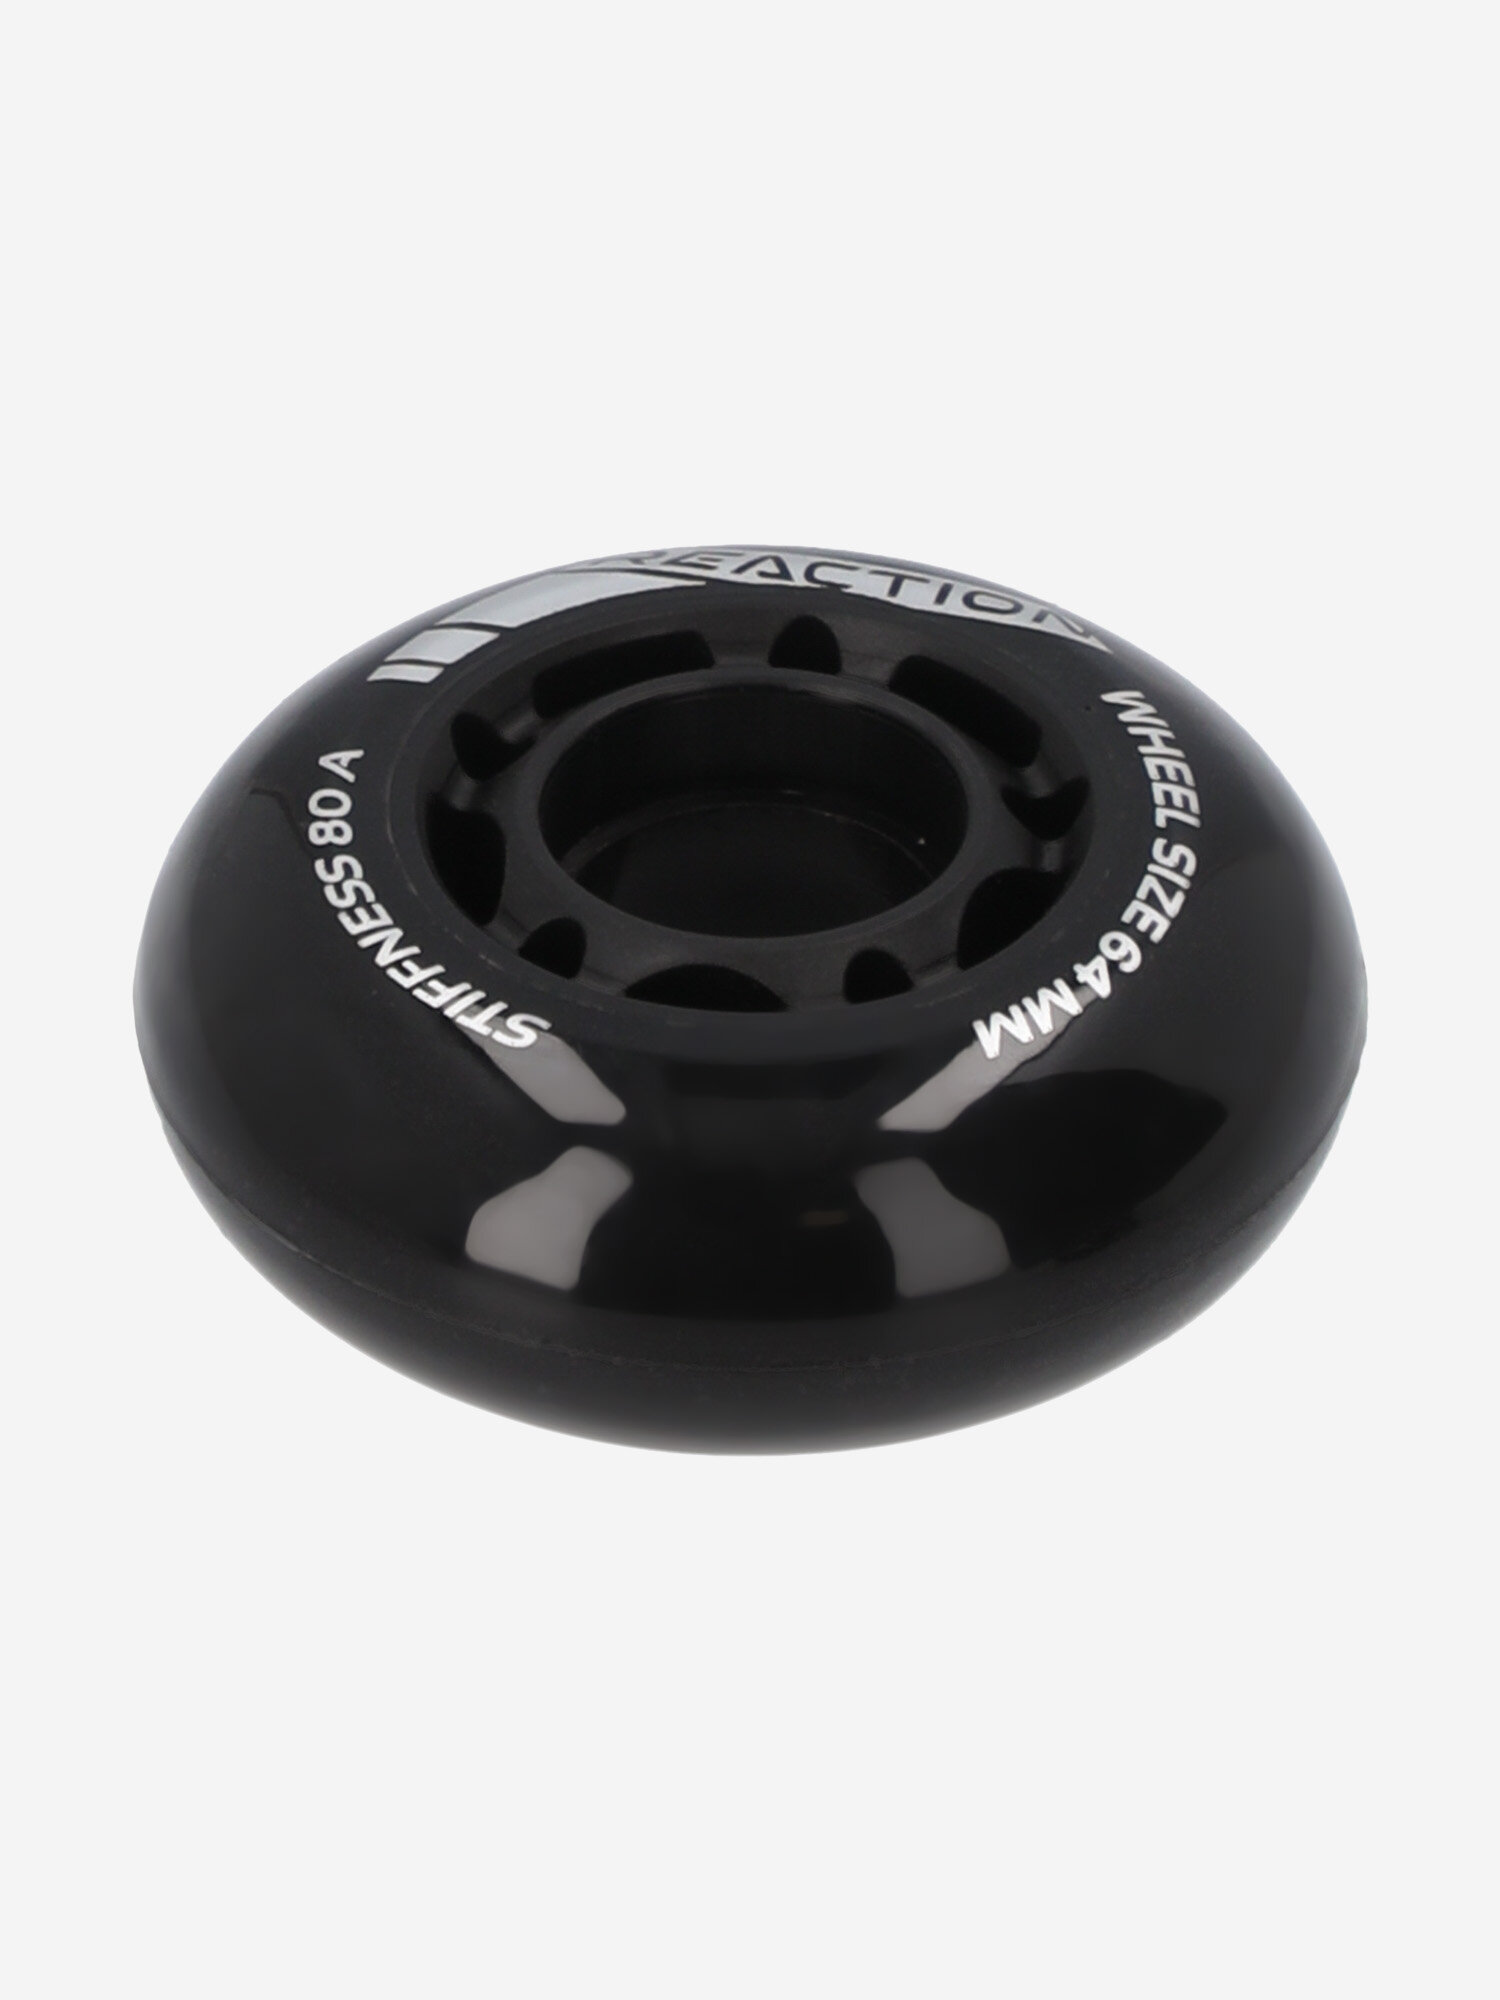 Набор колес для роликов детский Reaction 64 мм, 80А, 4 шт Черный; RUS: Б/р, Ориг: one size